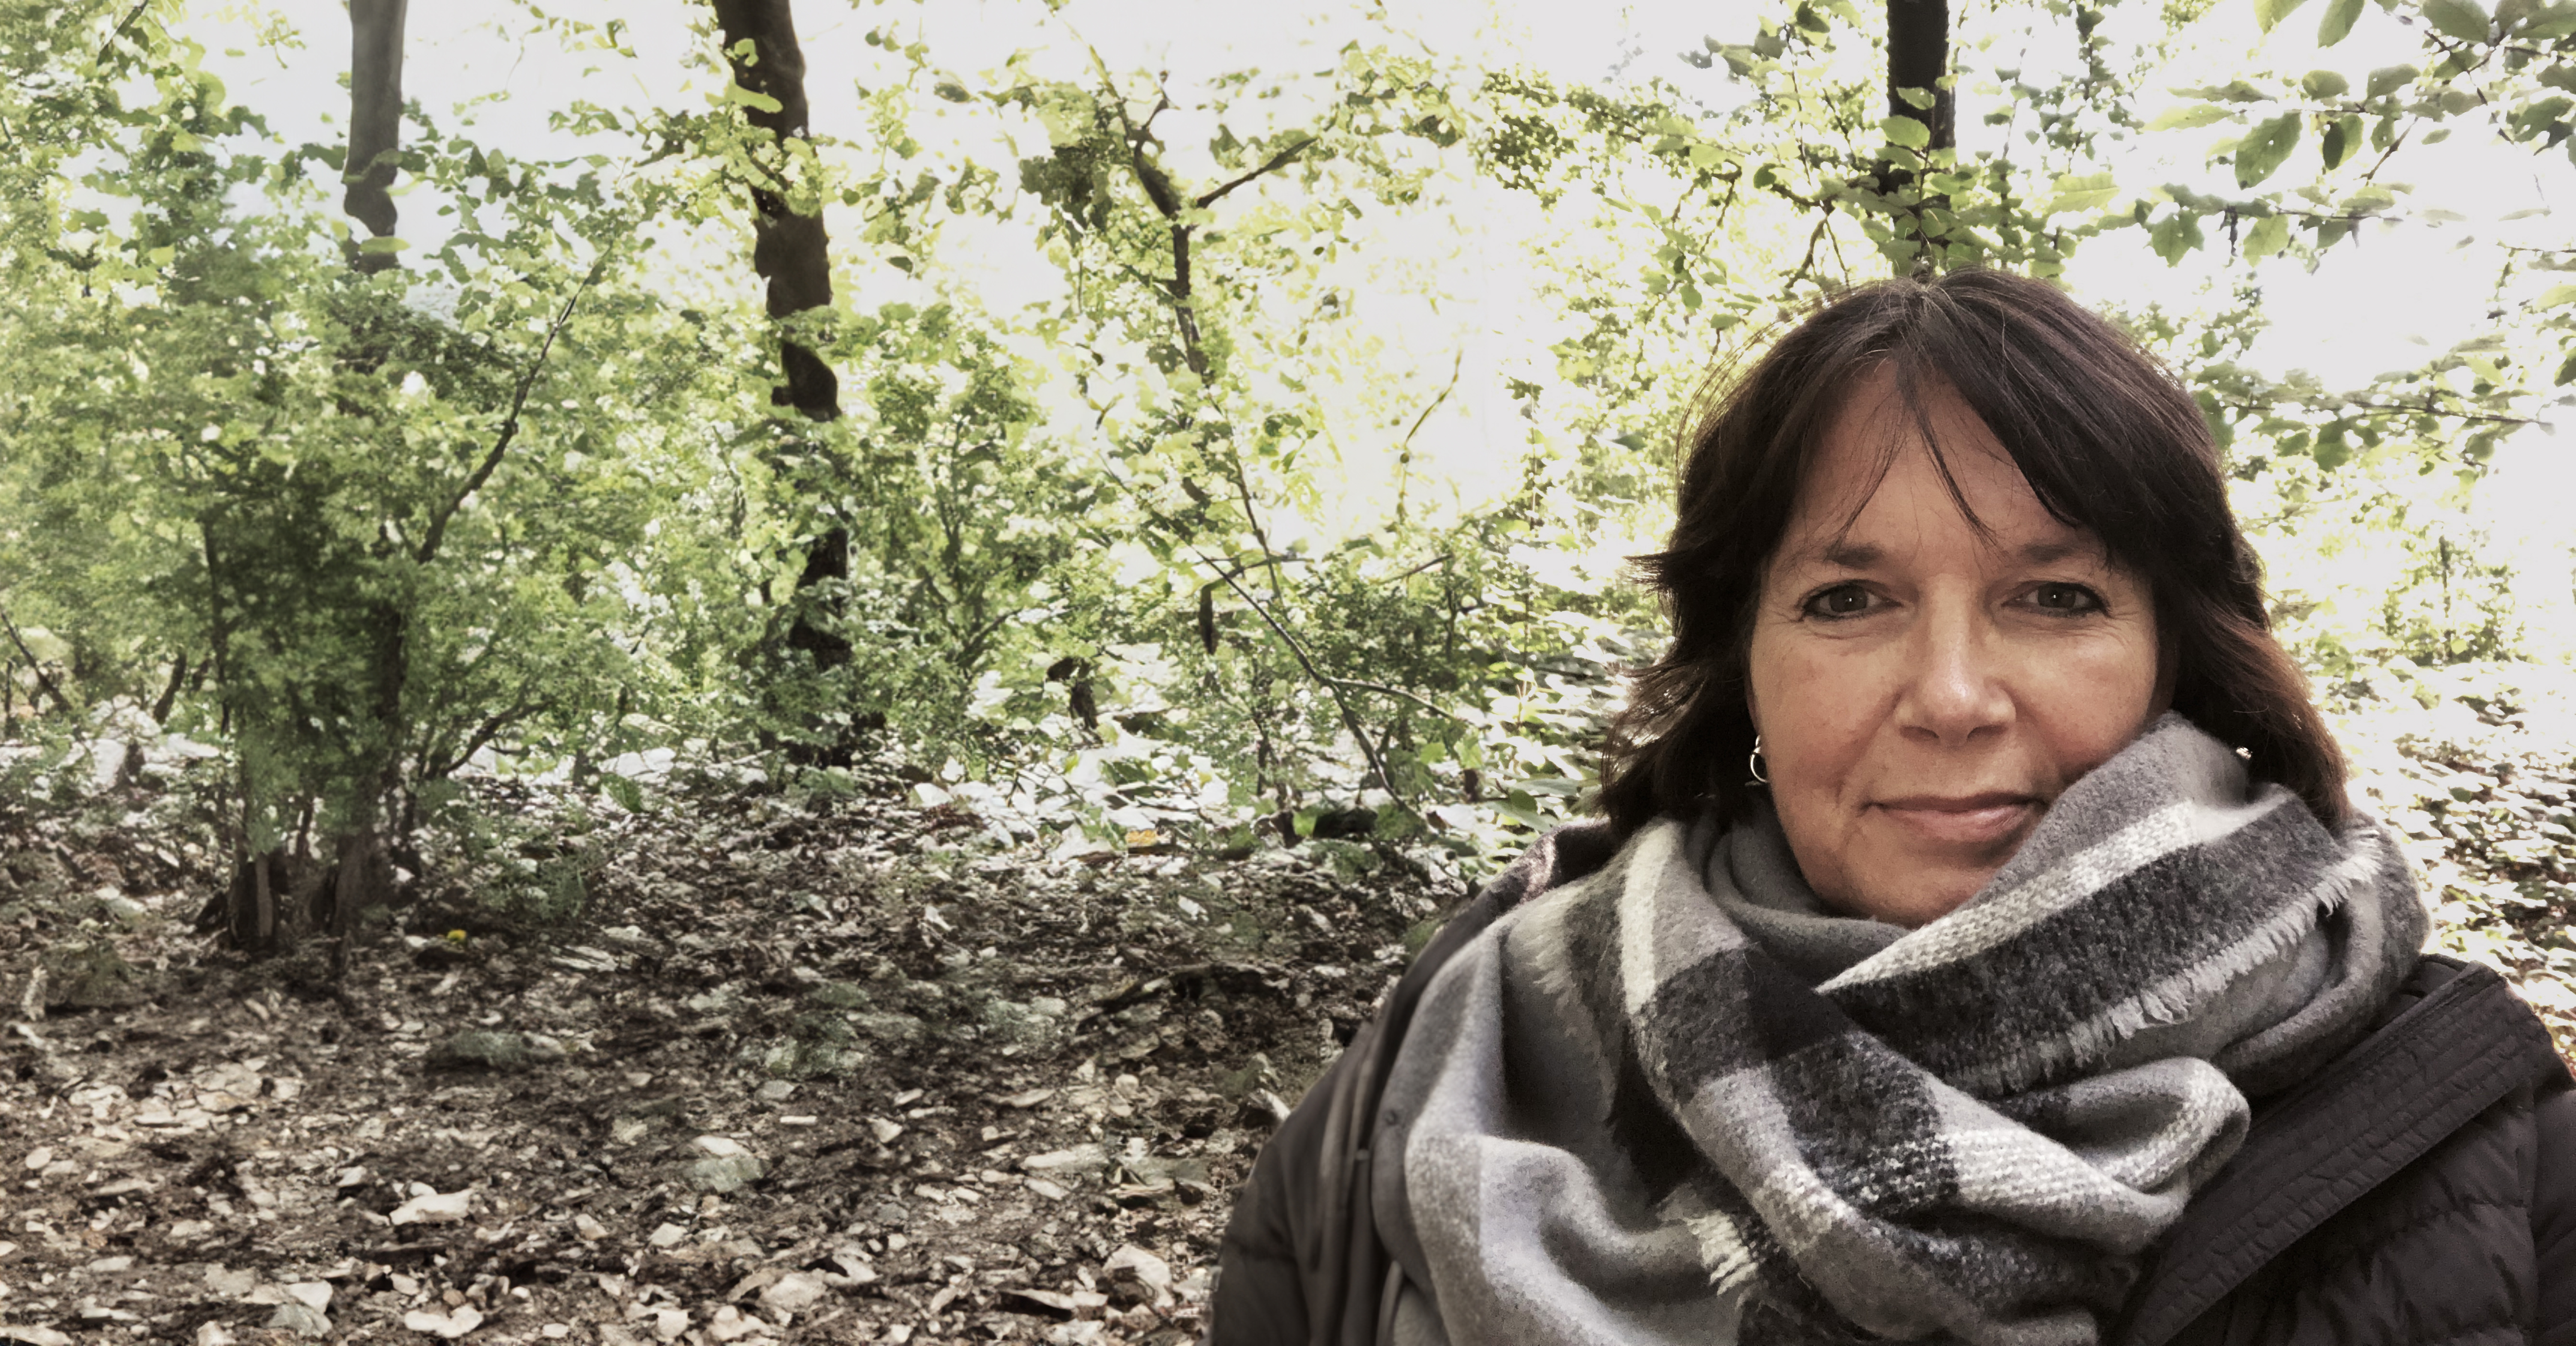 Martina blickt lächelnd in die Kamera. Sie trägt einen grauen Schal und ist umgeben von Wald.